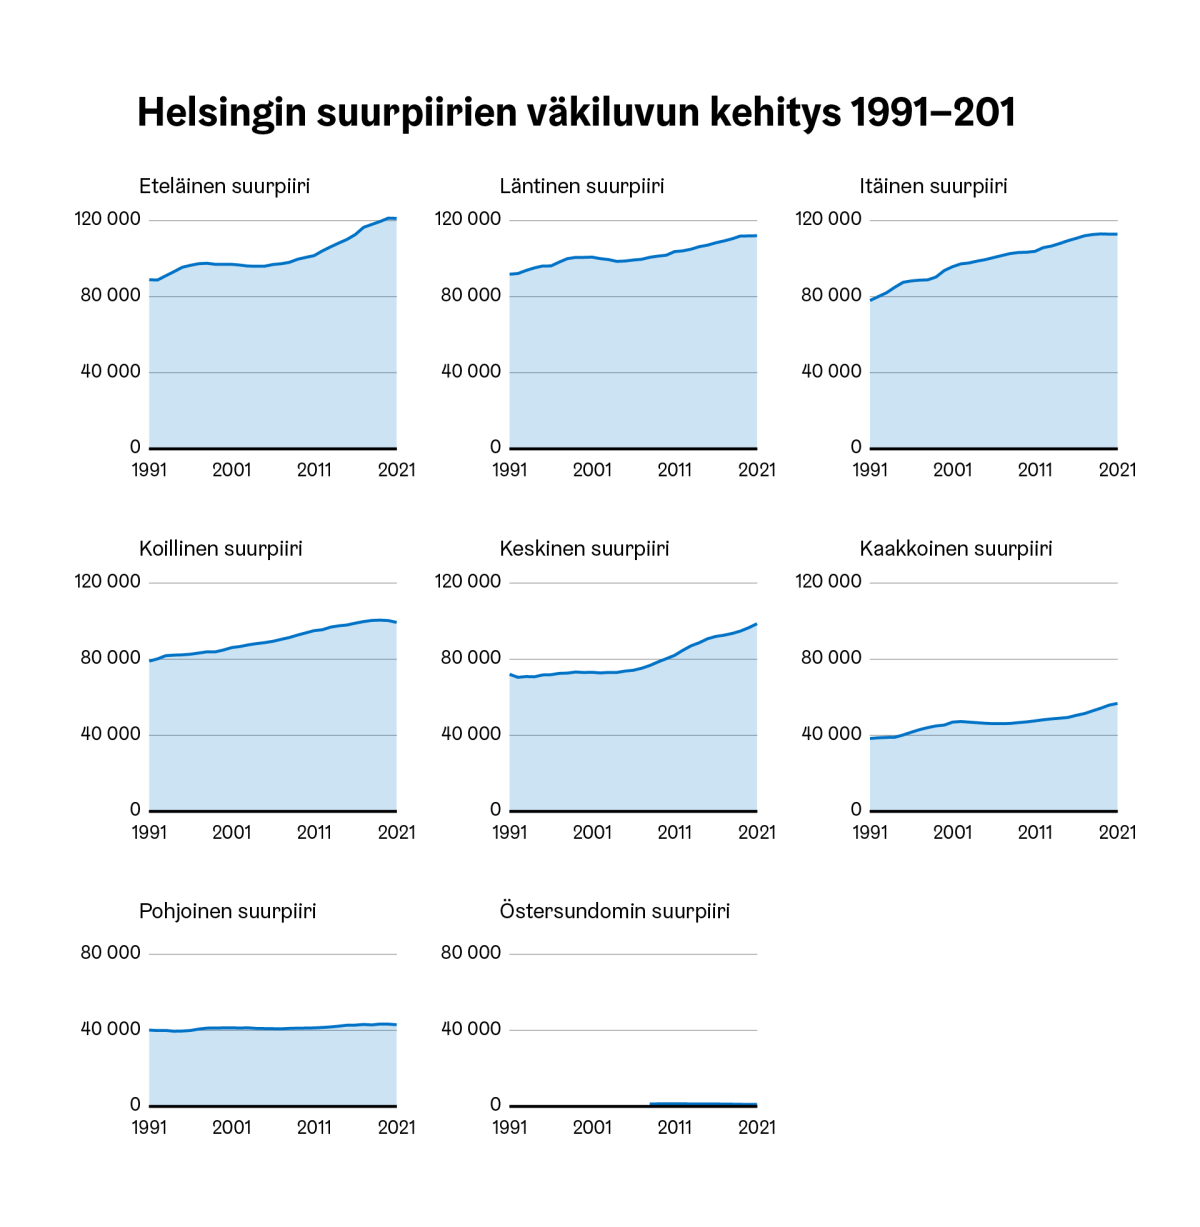 Esimerkki toistokuviosta, jossa jokainen kuvion osa on Helsingin suurpiirin oma viivakuvio samalta aikajaksolta.